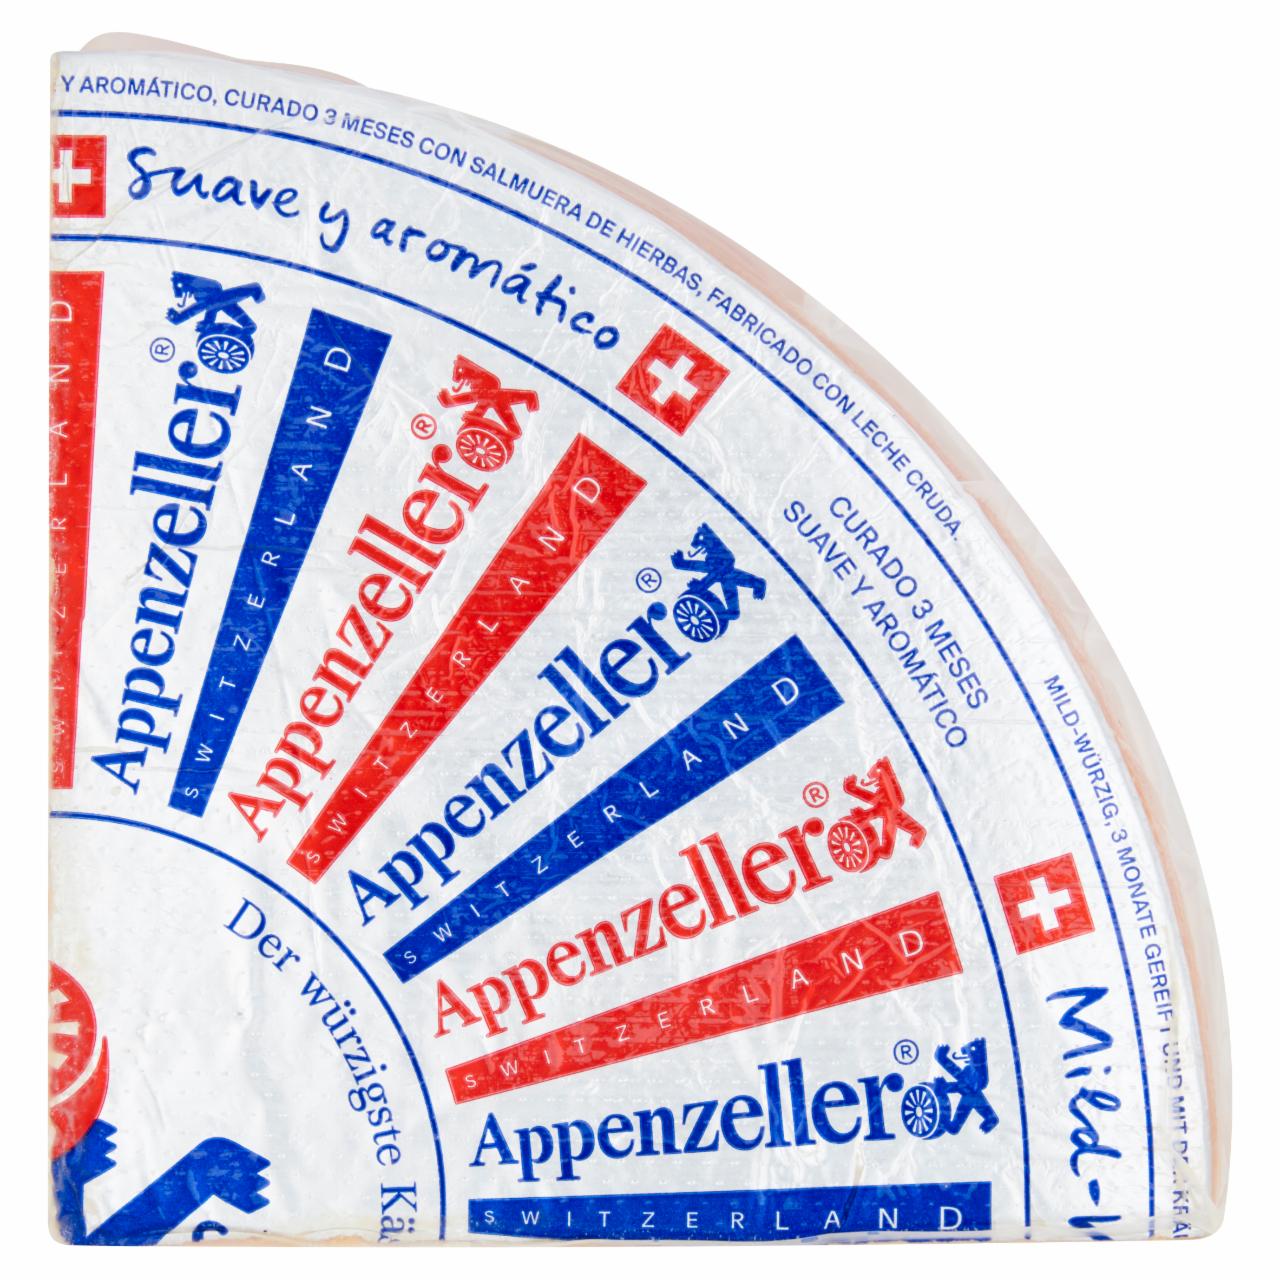 Képek - Appenzeller Doux svájci, 4-5 hónapos érlelésű, zsíros, félkemény sajt